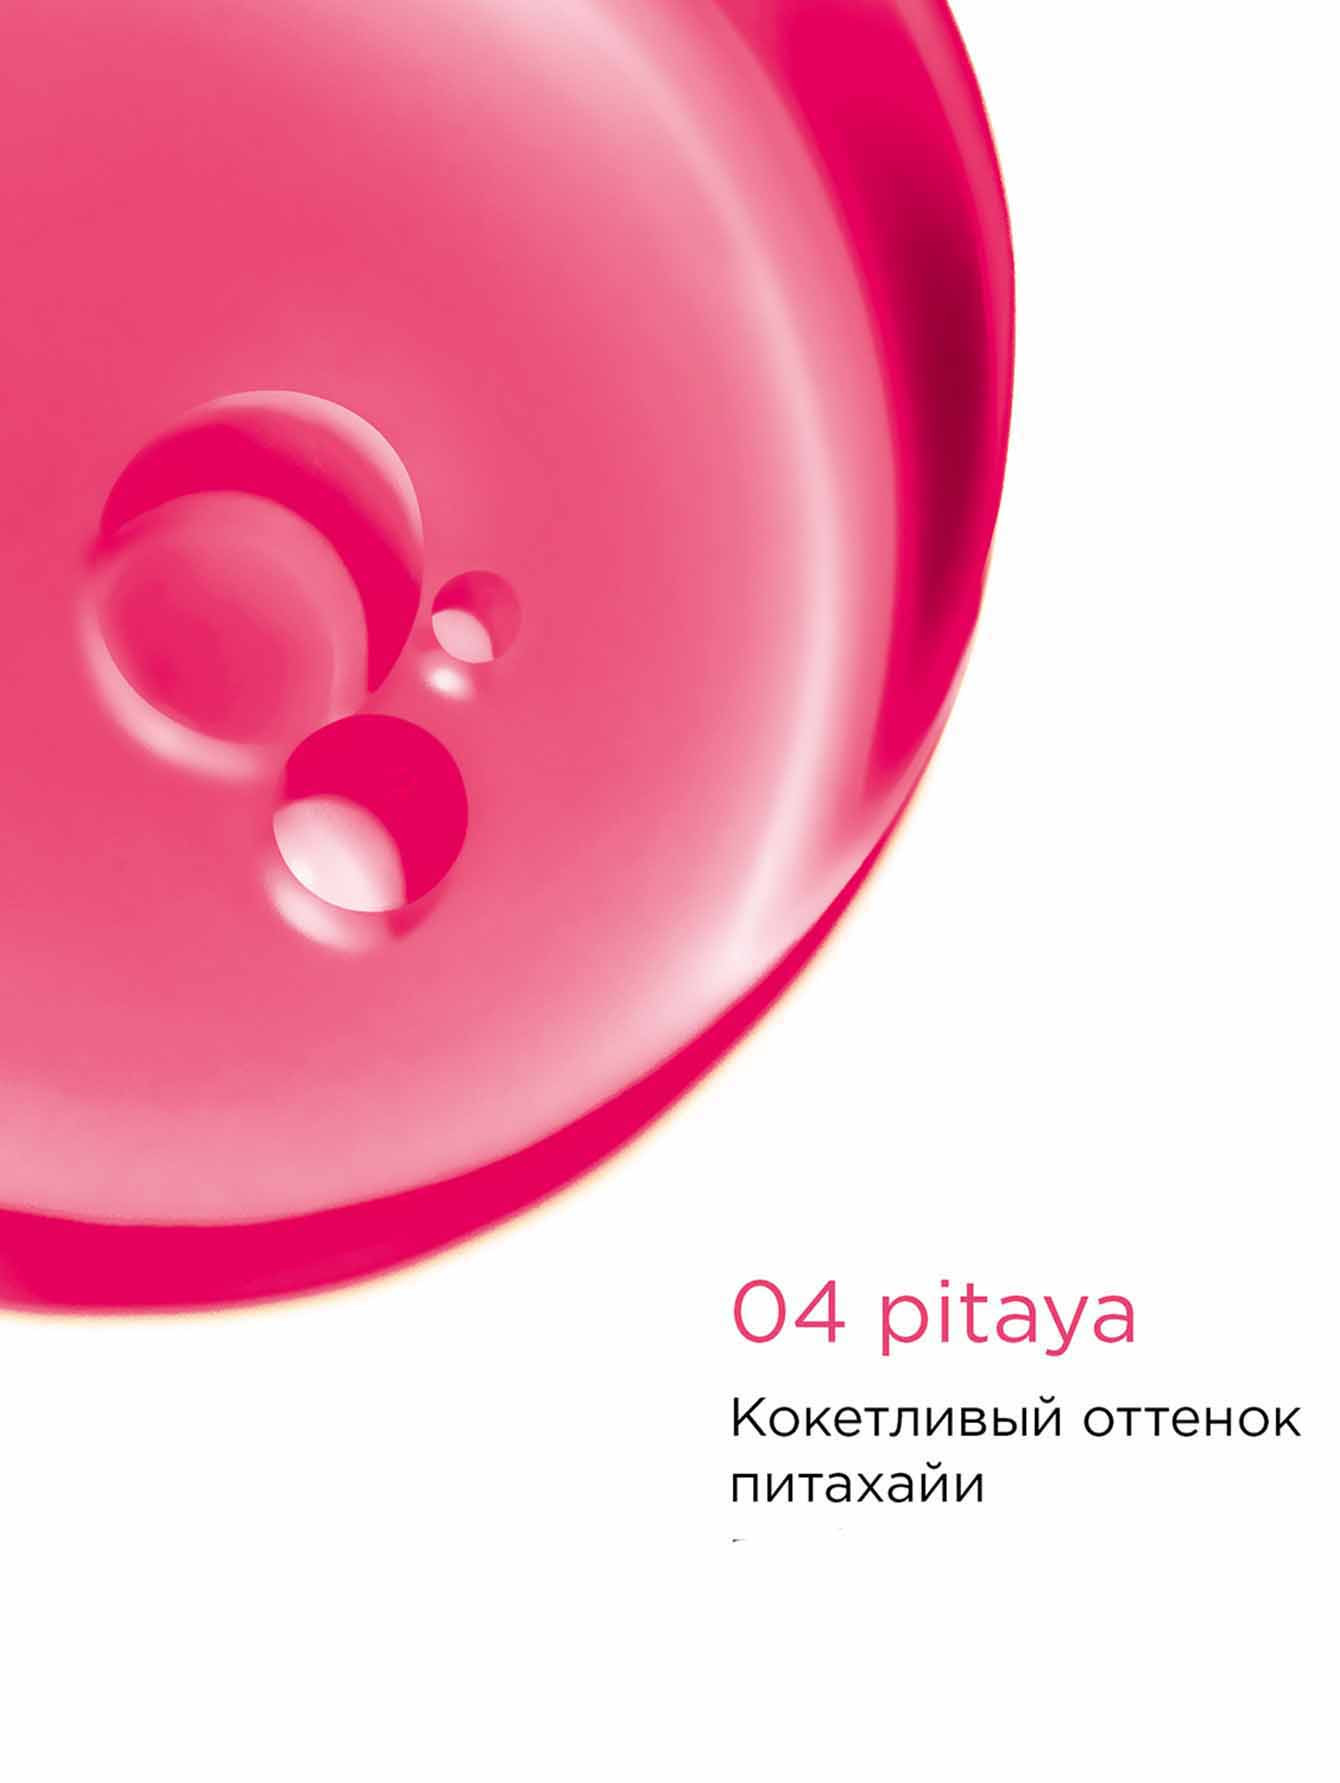 Масло-блеск для губ Lip Comfort Oil, 04 Pitaya, 7 мл - Обтравка1